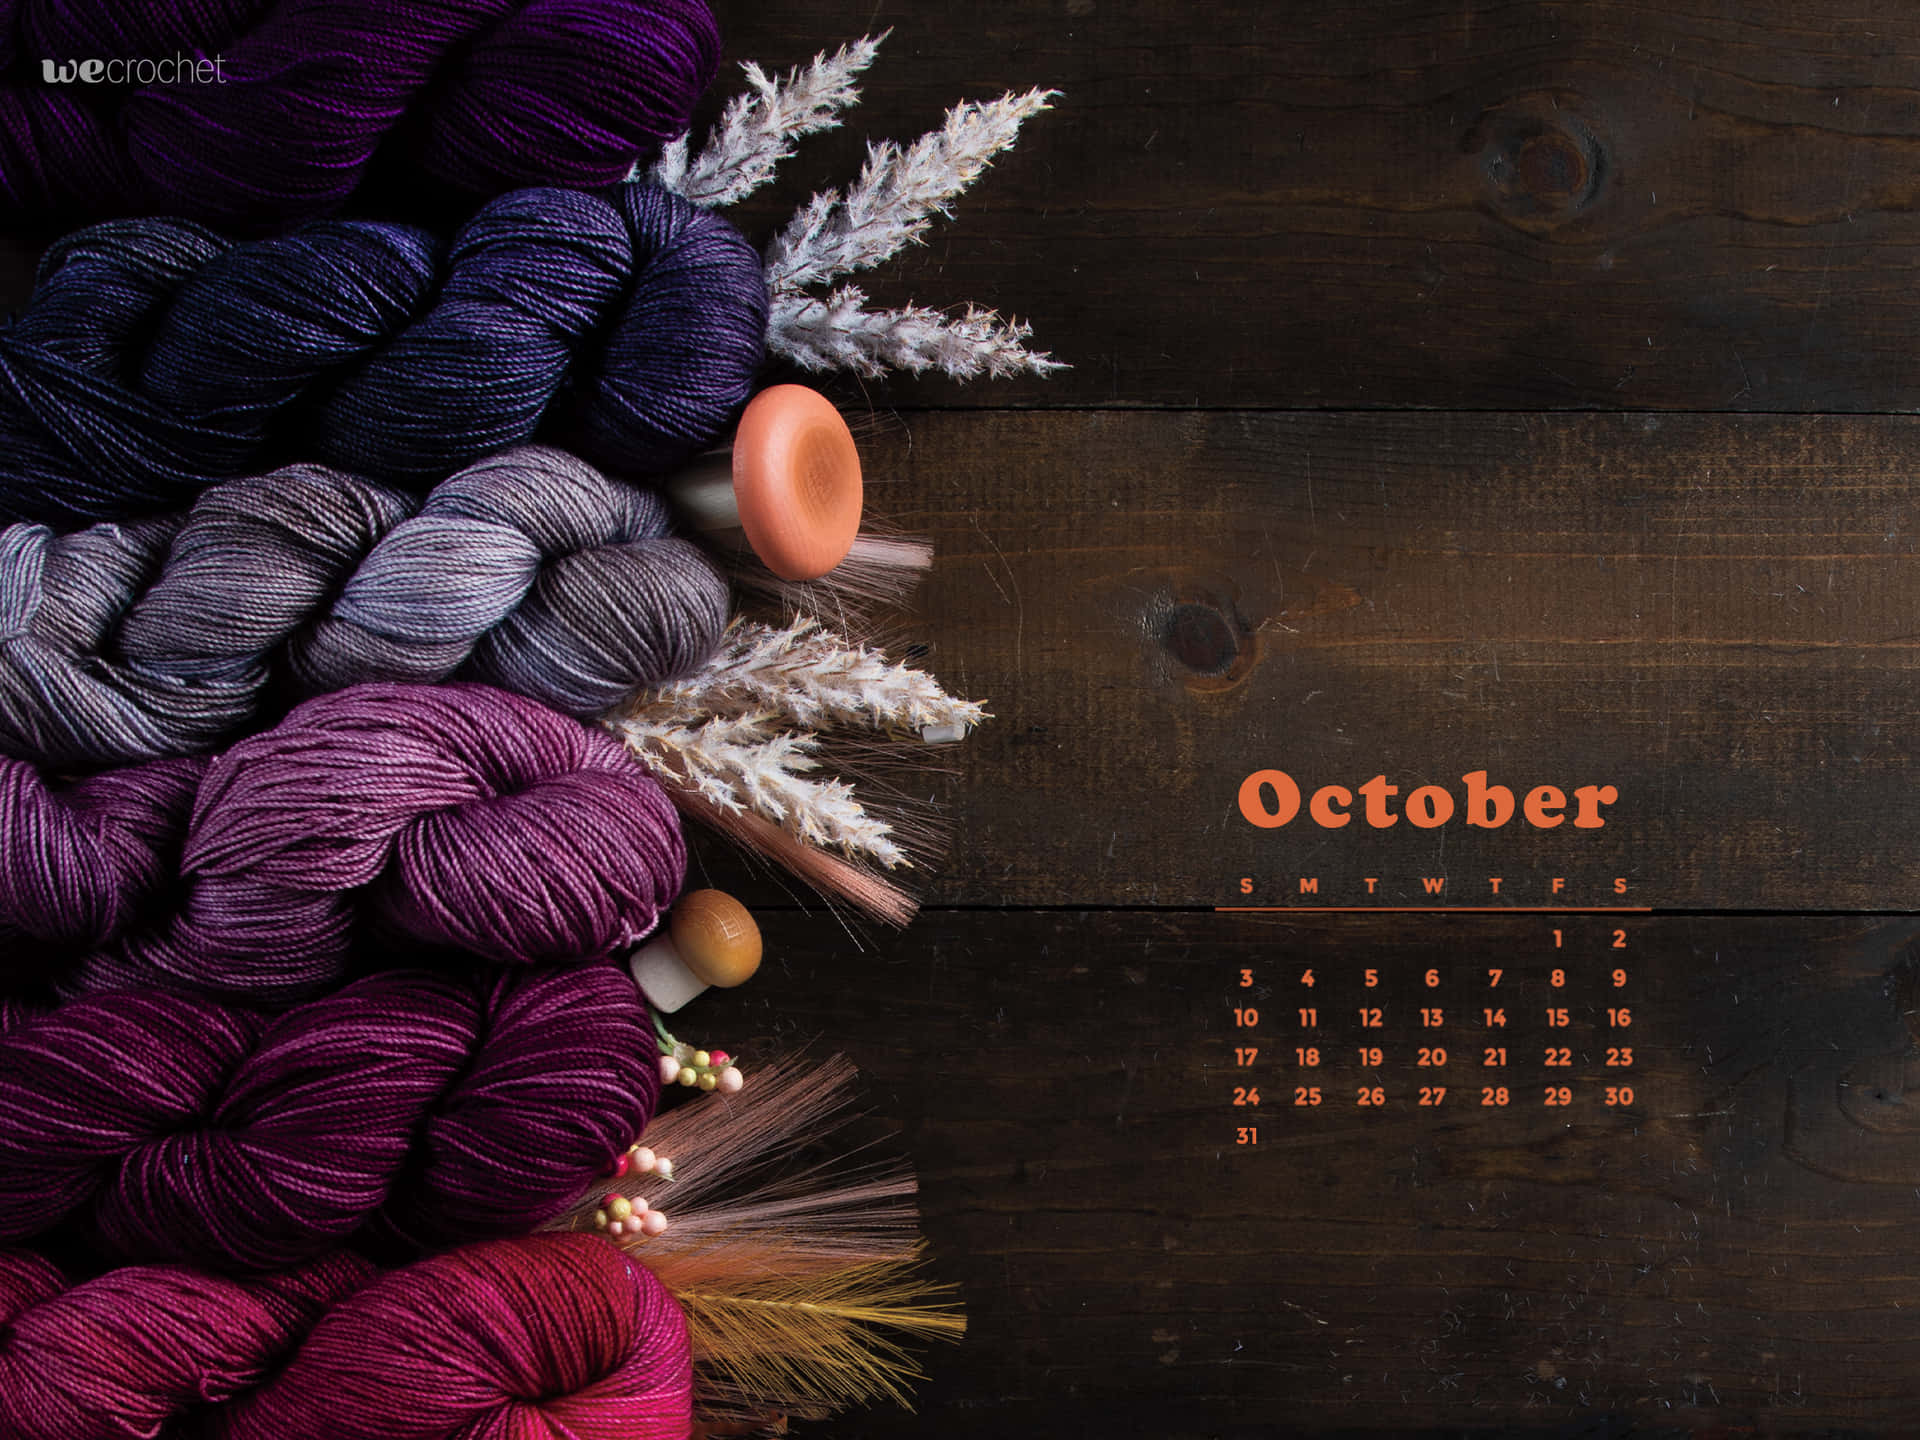 Oktoberkalenderbakgrundsbild Med Garn Och Tråd Wallpaper